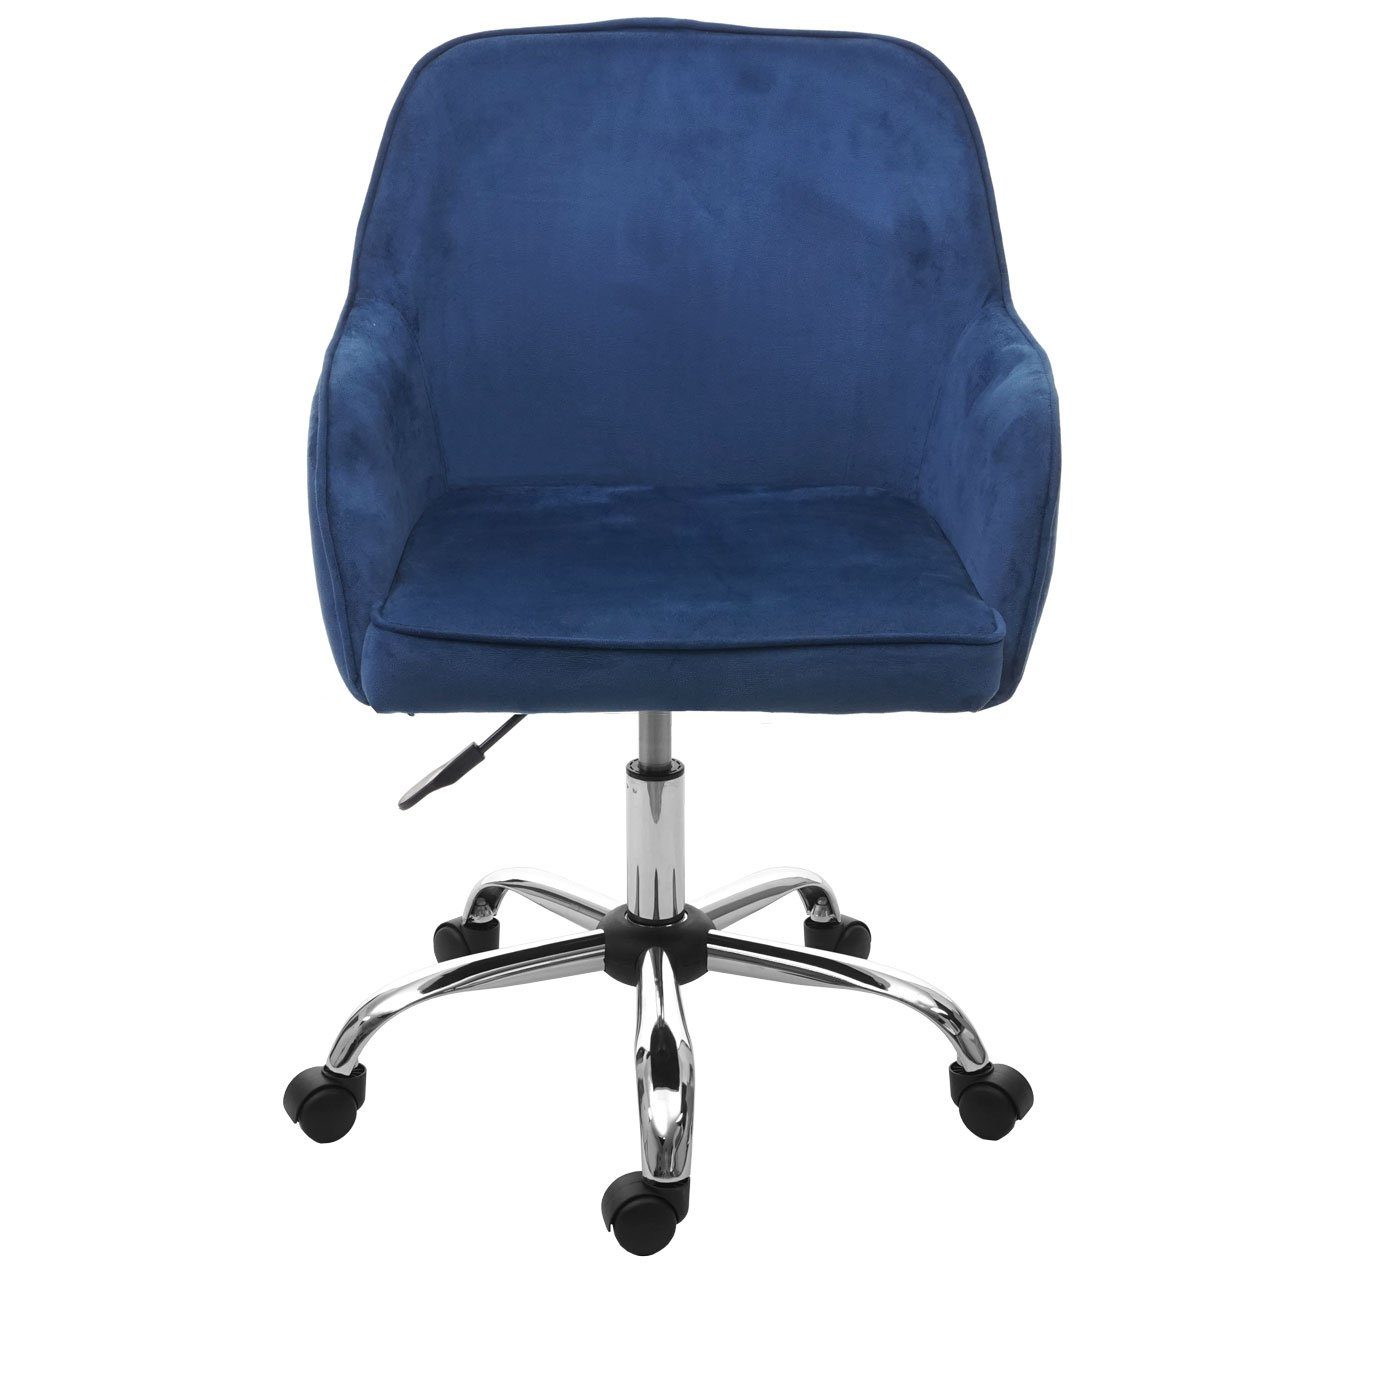 MCW-F82, MCW Schreibtischstuhl Universalrollen, Polsterung Bequeme verstellbar, stufenlos blau 5 Sitzhöhe